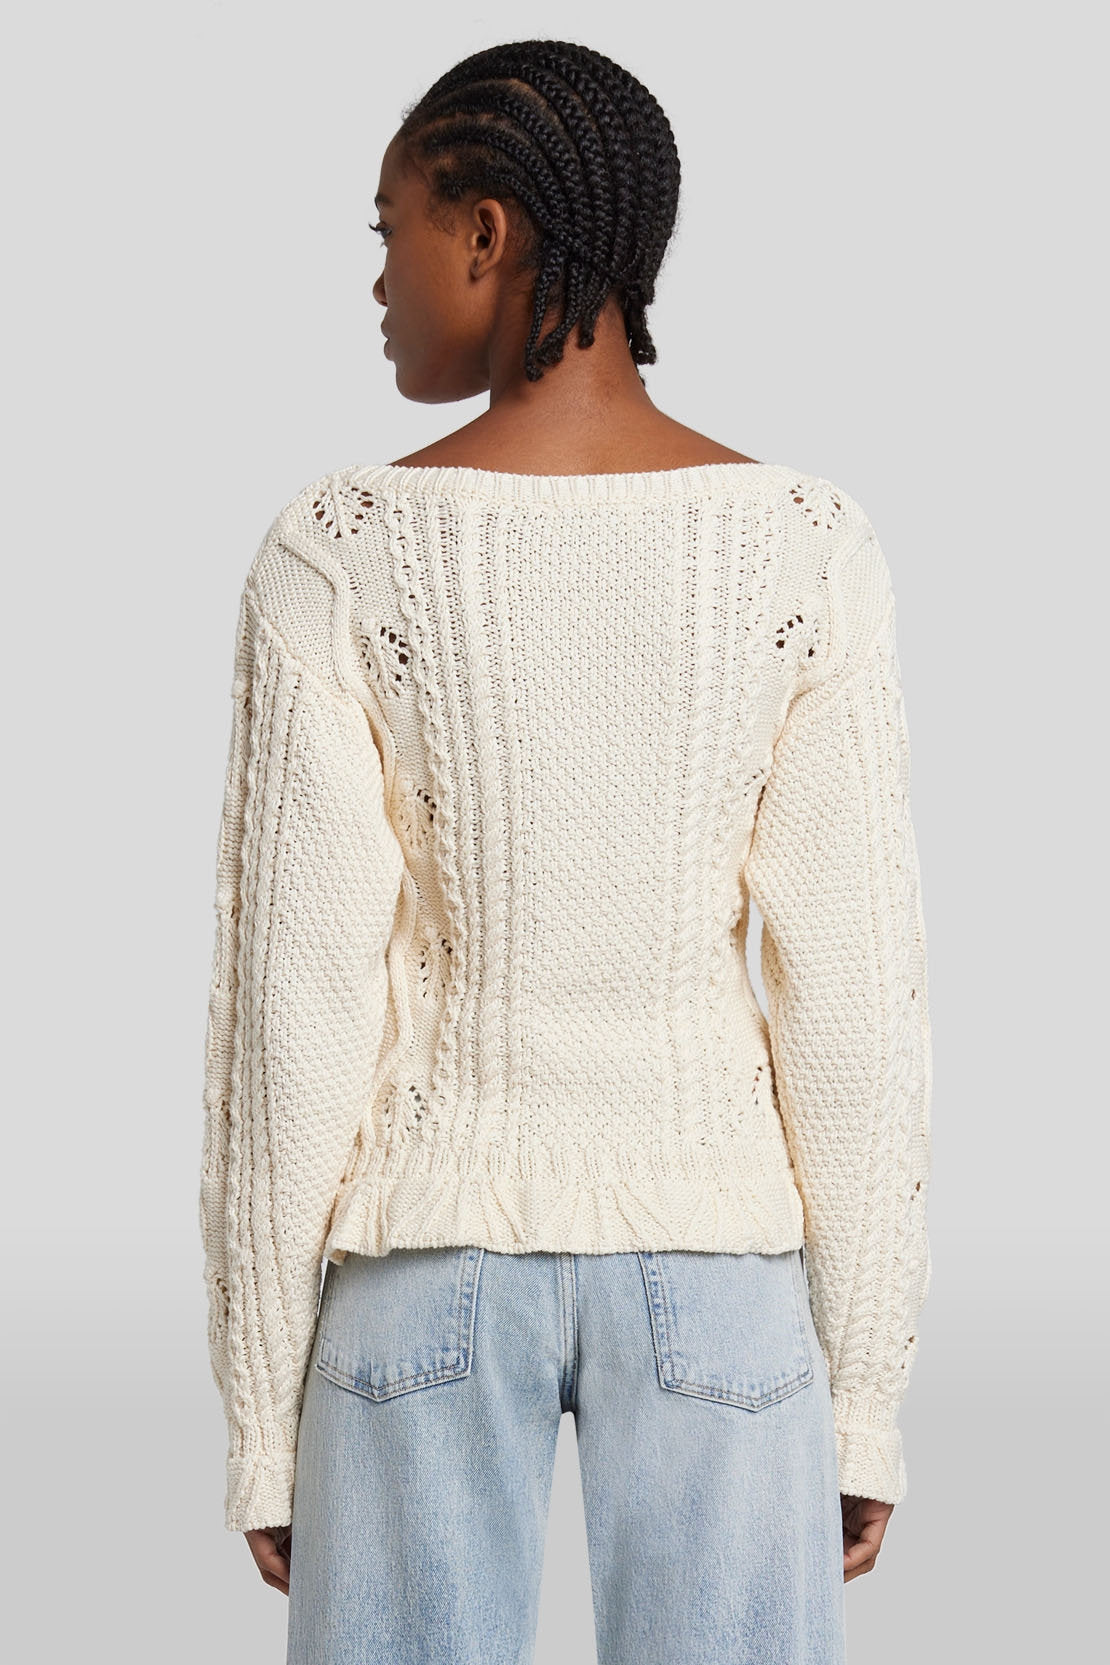 Bobble Sweater Cotton Cream_JSHL5480CR_CR_04